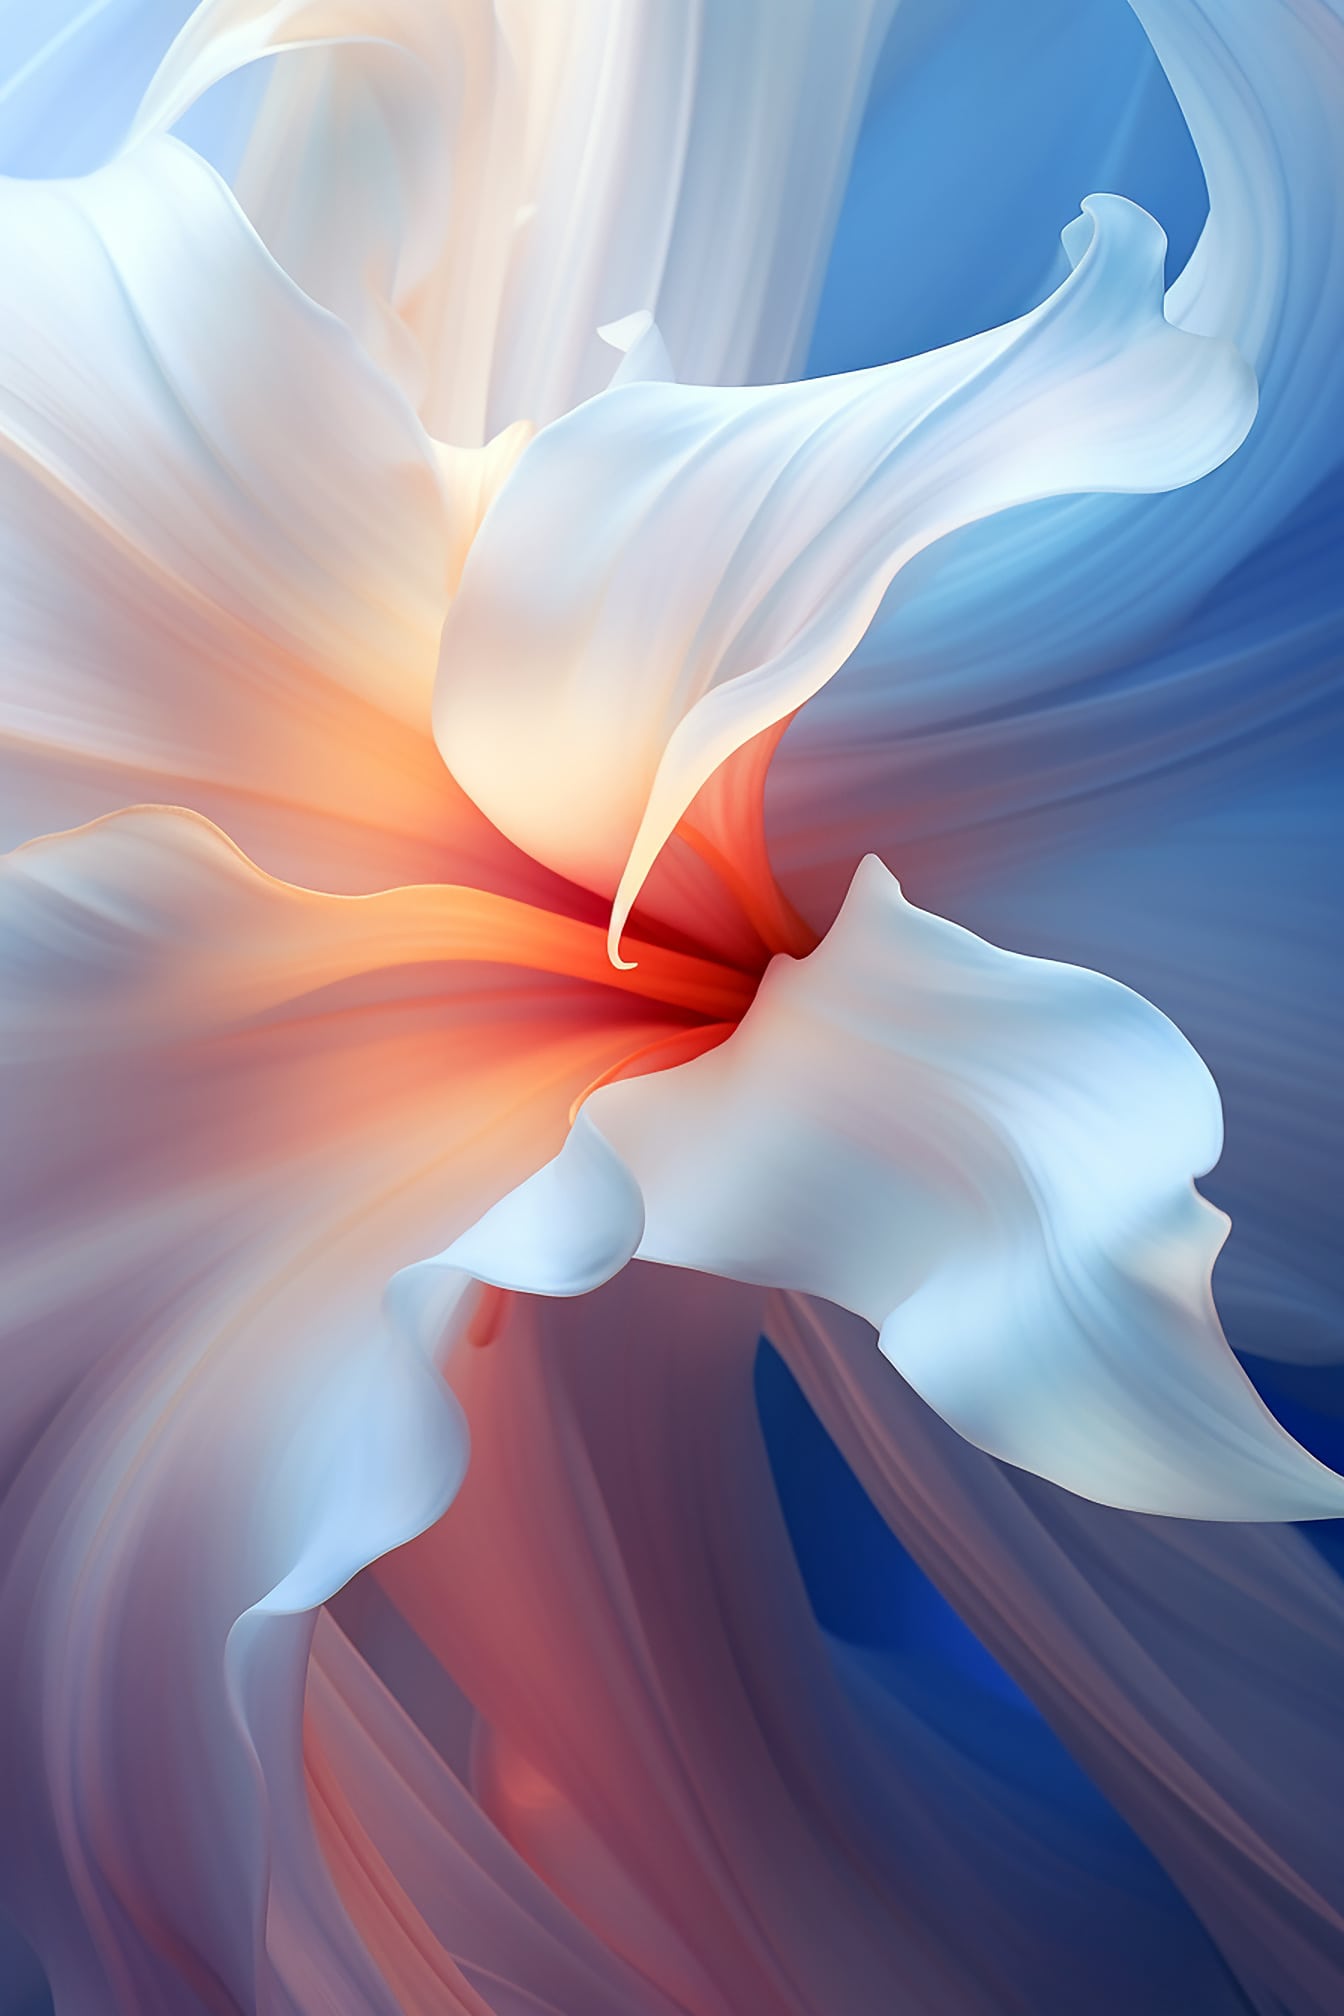 Kelopak bunga putih karya seni digital asli dengan kurva dinamis dan halus